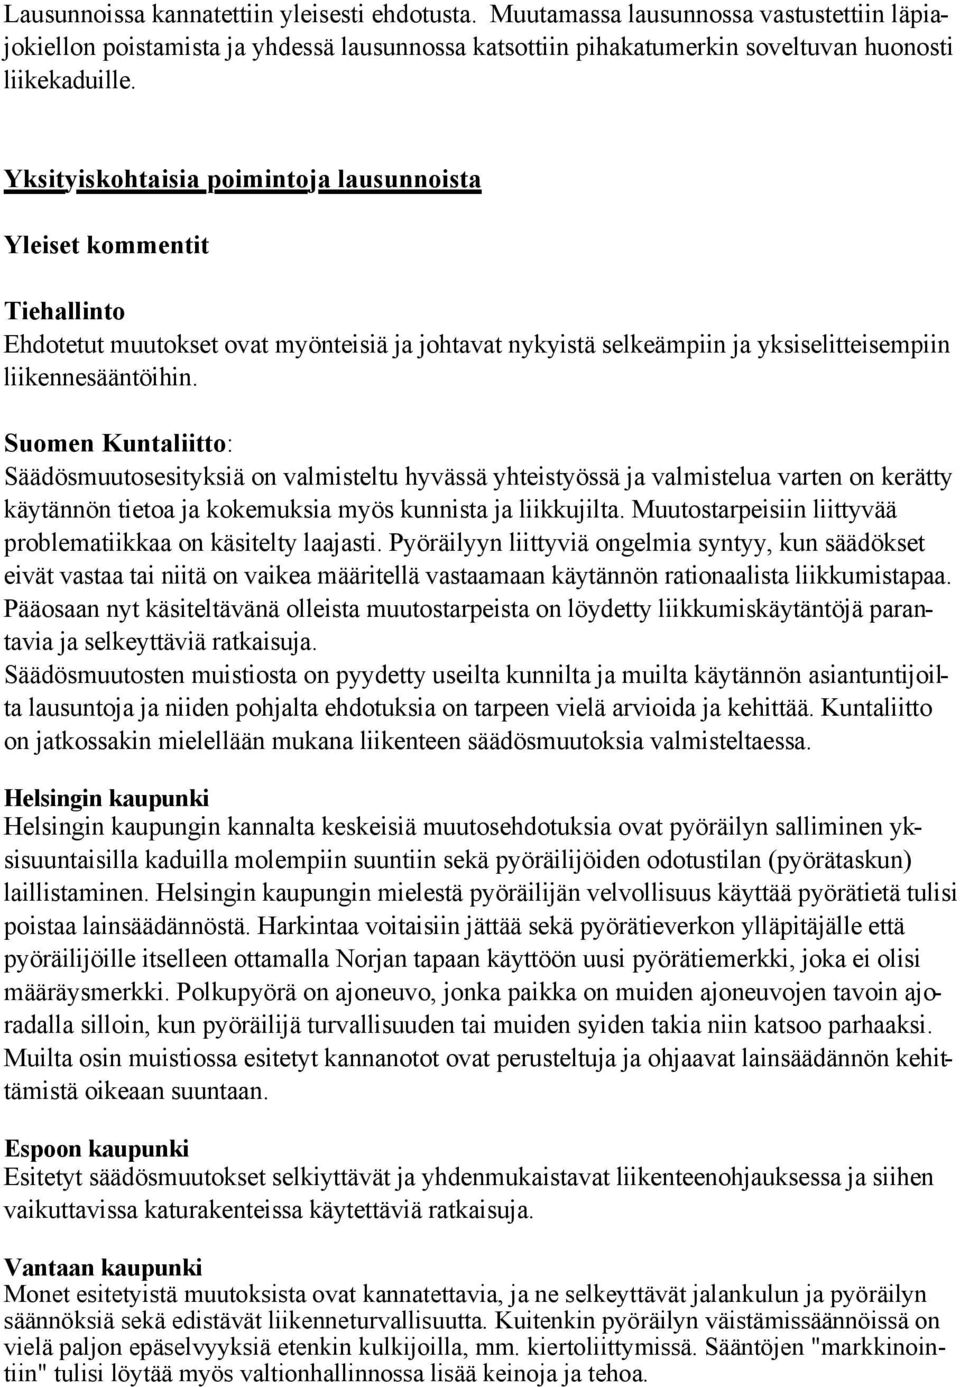 Suomen Kuntaliitto: Säädösmuutosesityksiä on valmisteltu hyvässä yhteistyössä ja valmistelua varten on kerätty käytännön tietoa ja kokemuksia myös kunnista ja liikkujilta.